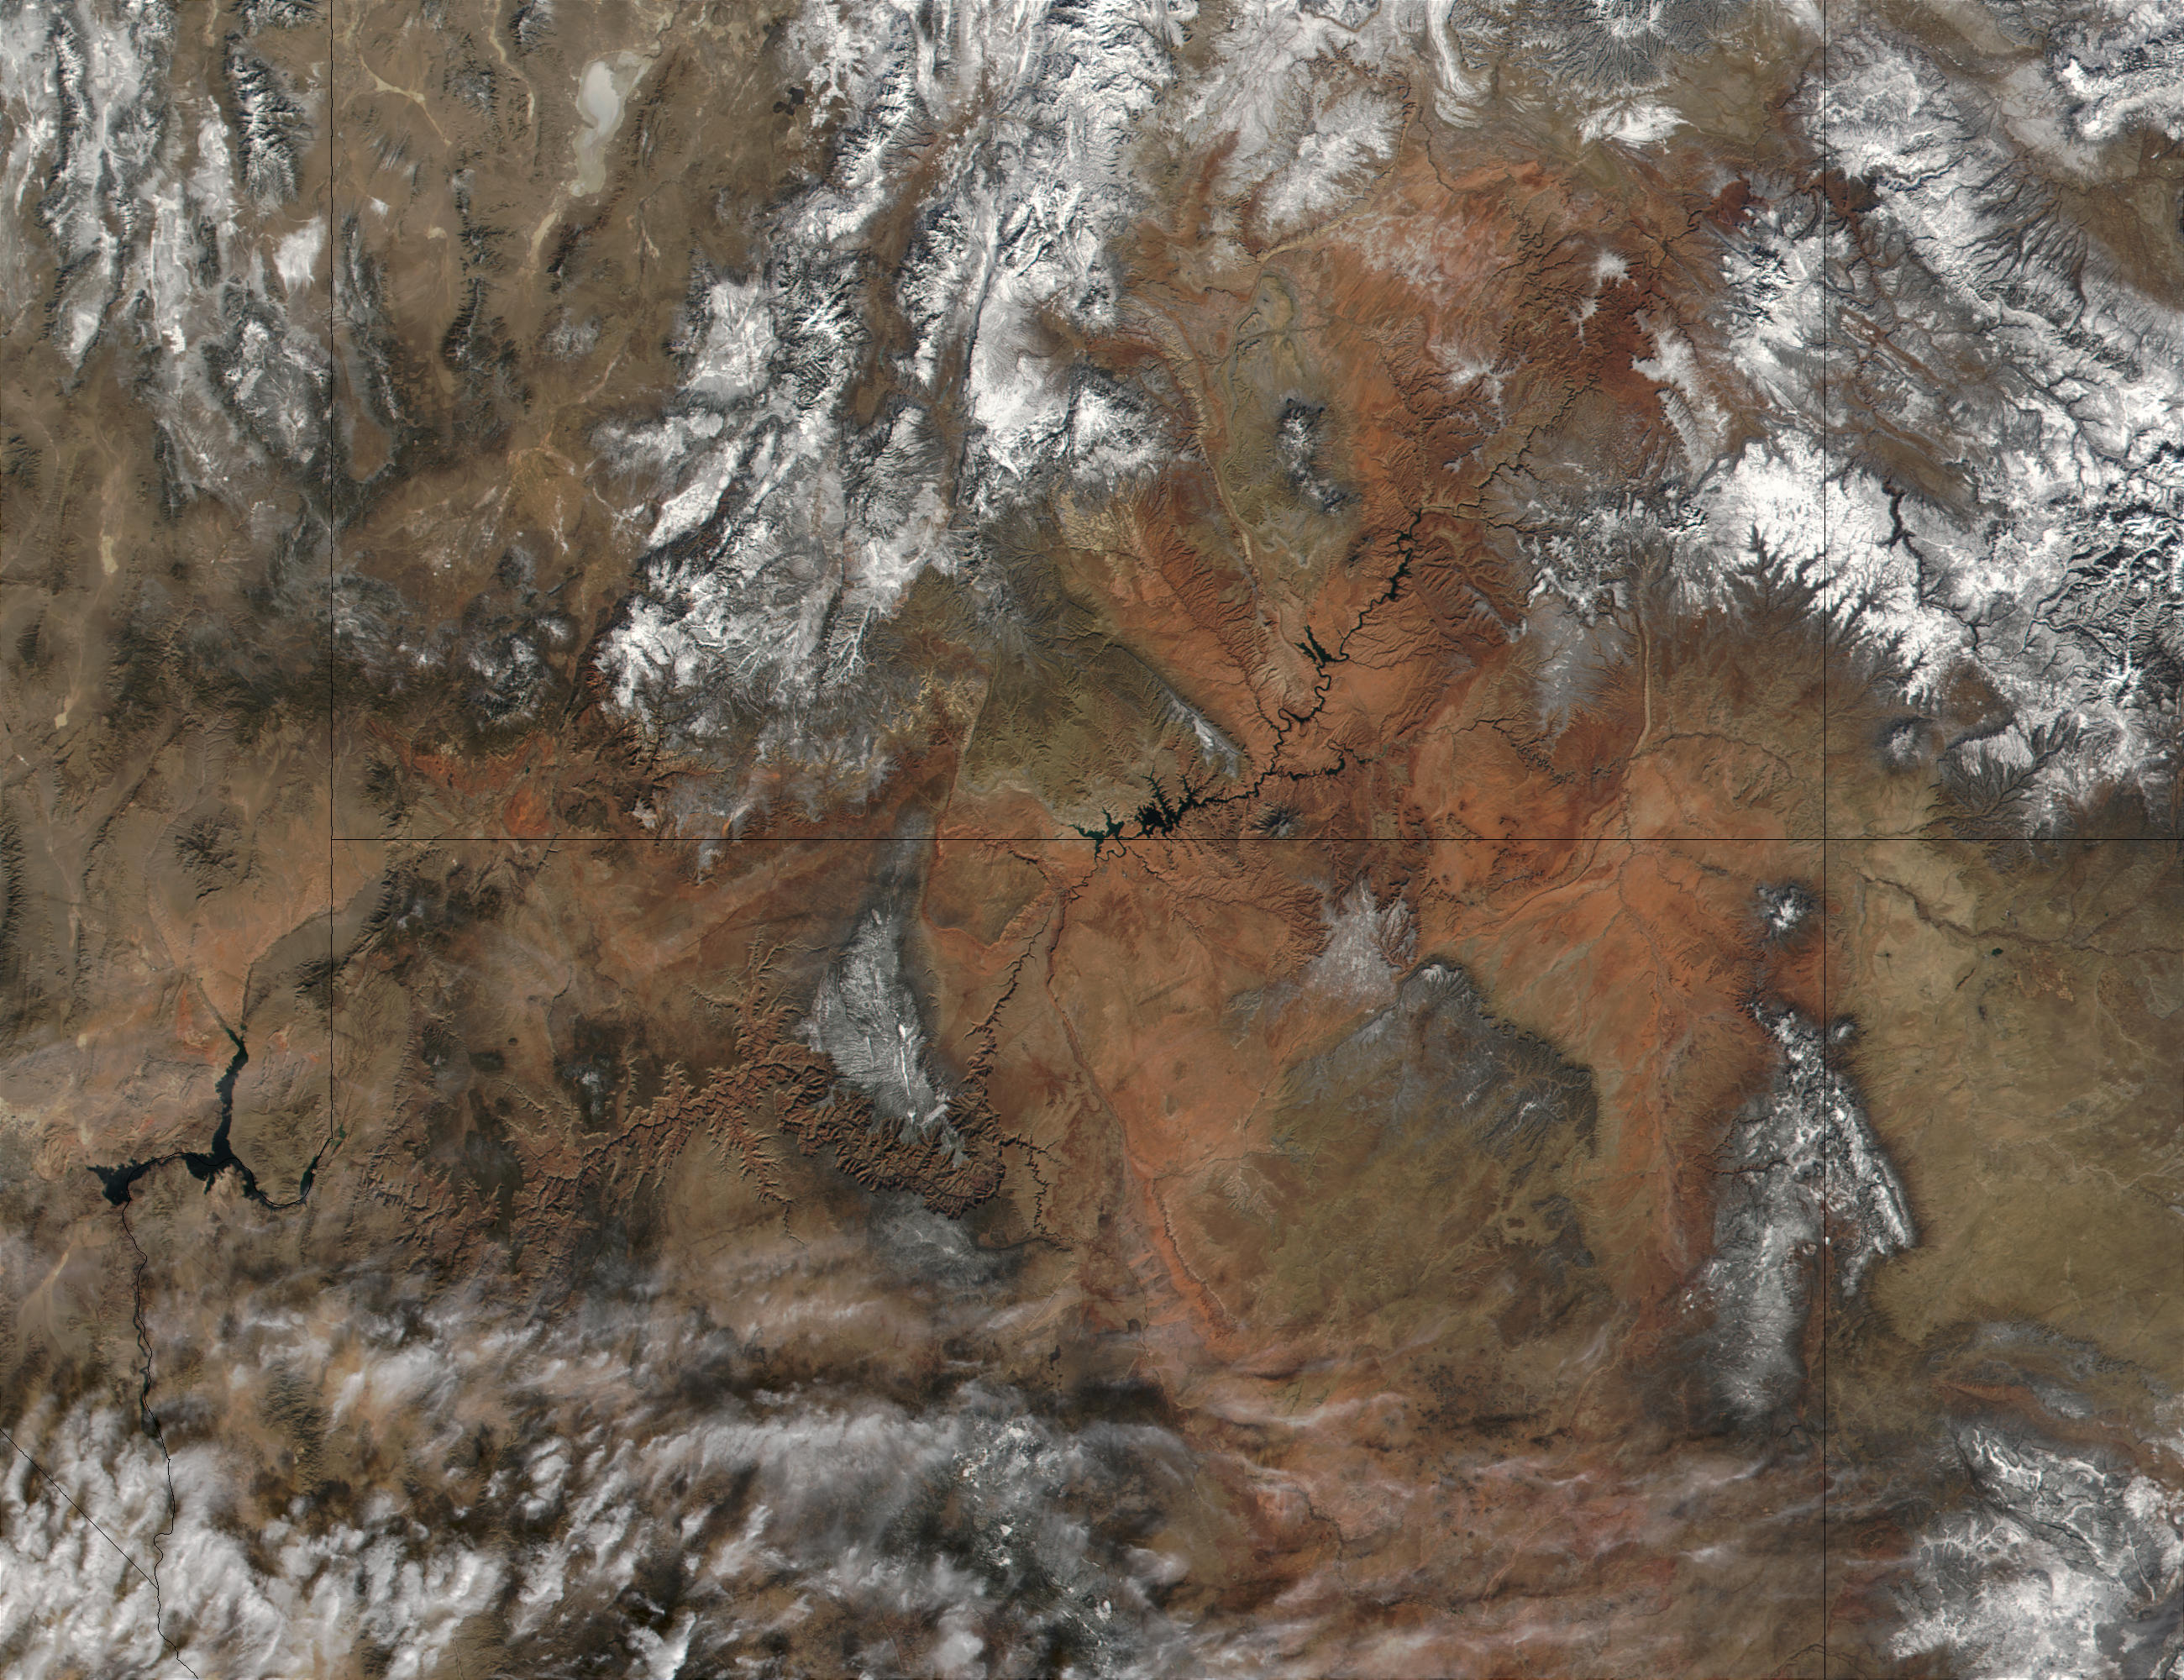 Grand Canyon satelliet グリーンランドの氷下に巨大な渓谷を確認！大きさはグランドキャニオンの2倍！